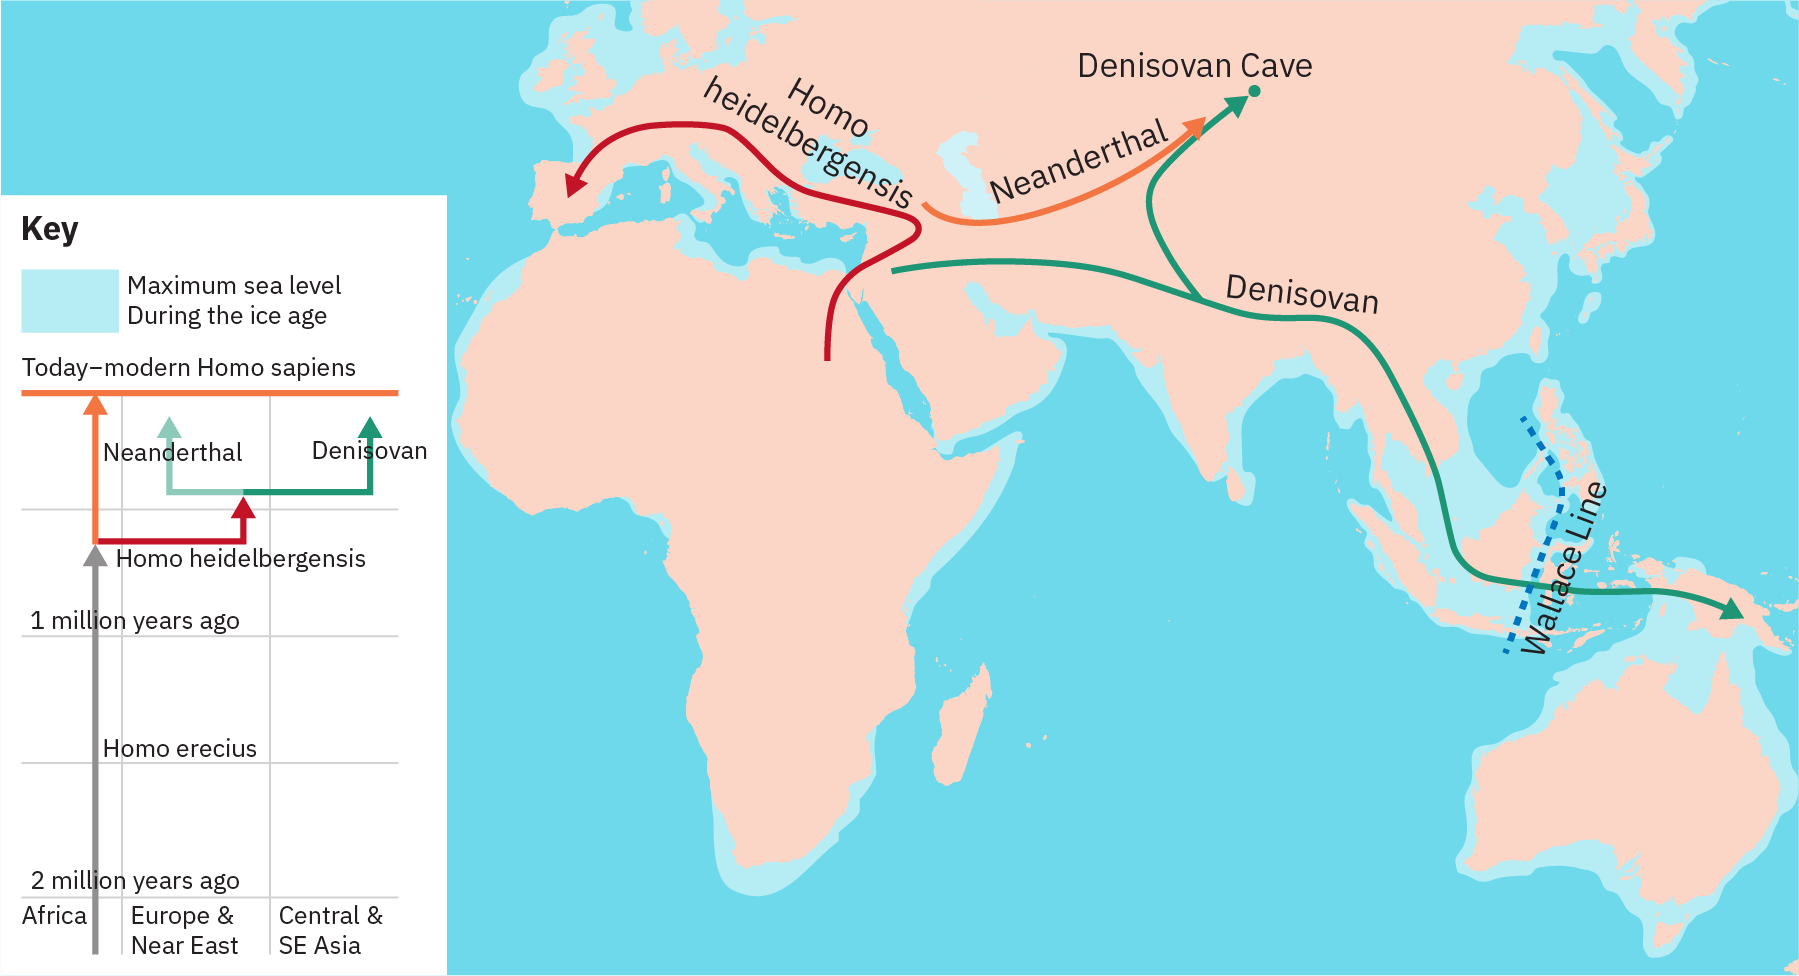 L'arbre phylogénétique montre une lignée qui s'étend dans le temps, depuis 2 millions d'années jusqu'à « l'Homo sapiens moderne d'aujourd'hui ». À partir de cette ligne se trouve une ligne pour « Homo heidelbergensis », qui à son tour bifurque en lignes pour « Néandertal » et « Denisovan ». La carte montre les Denisoviens qui migrent du Moyen-Orient à travers le sous-continent indien et vers la Nouvelle-Zélande. Un embranchement de la voie de Denisovan mène en Russie. Il a été démontré que les Néandertaliens ont émigré du Moyen-Orient vers la Russie. Il a été démontré que l'Homo heideibergensis a migré d'Afrique, en passant par le Moyen-Orient et en Europe, jusqu'en Espagne.